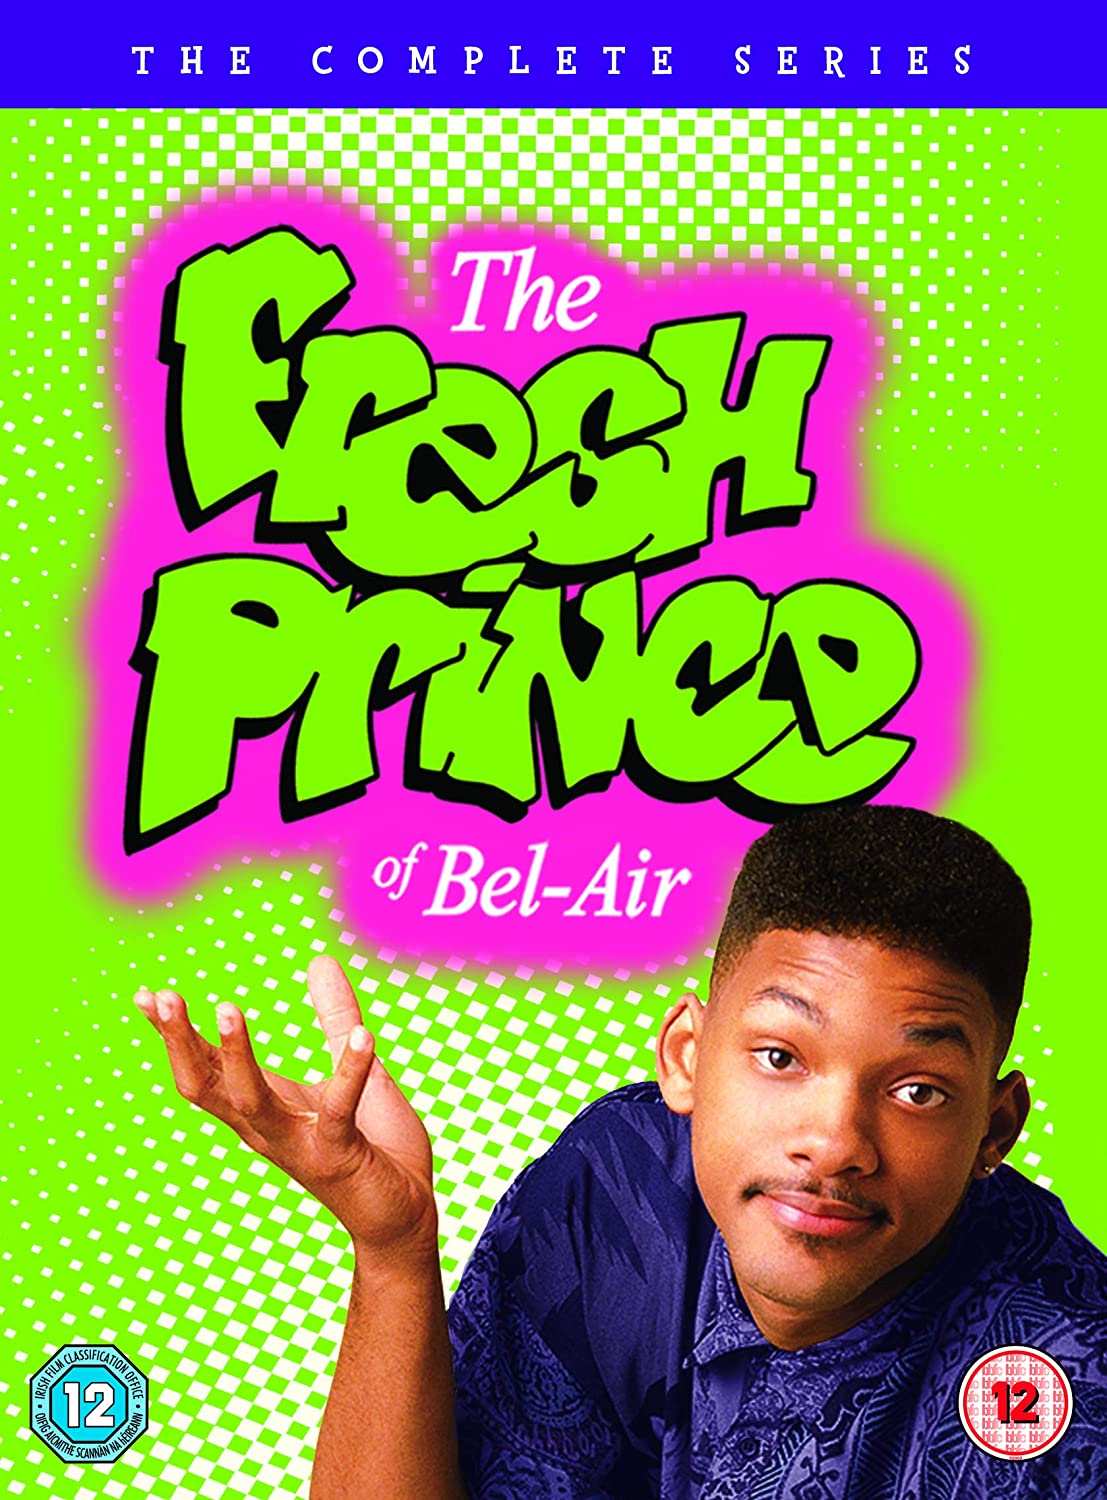 Der Prinz von Bel-Air: Die komplette Serie